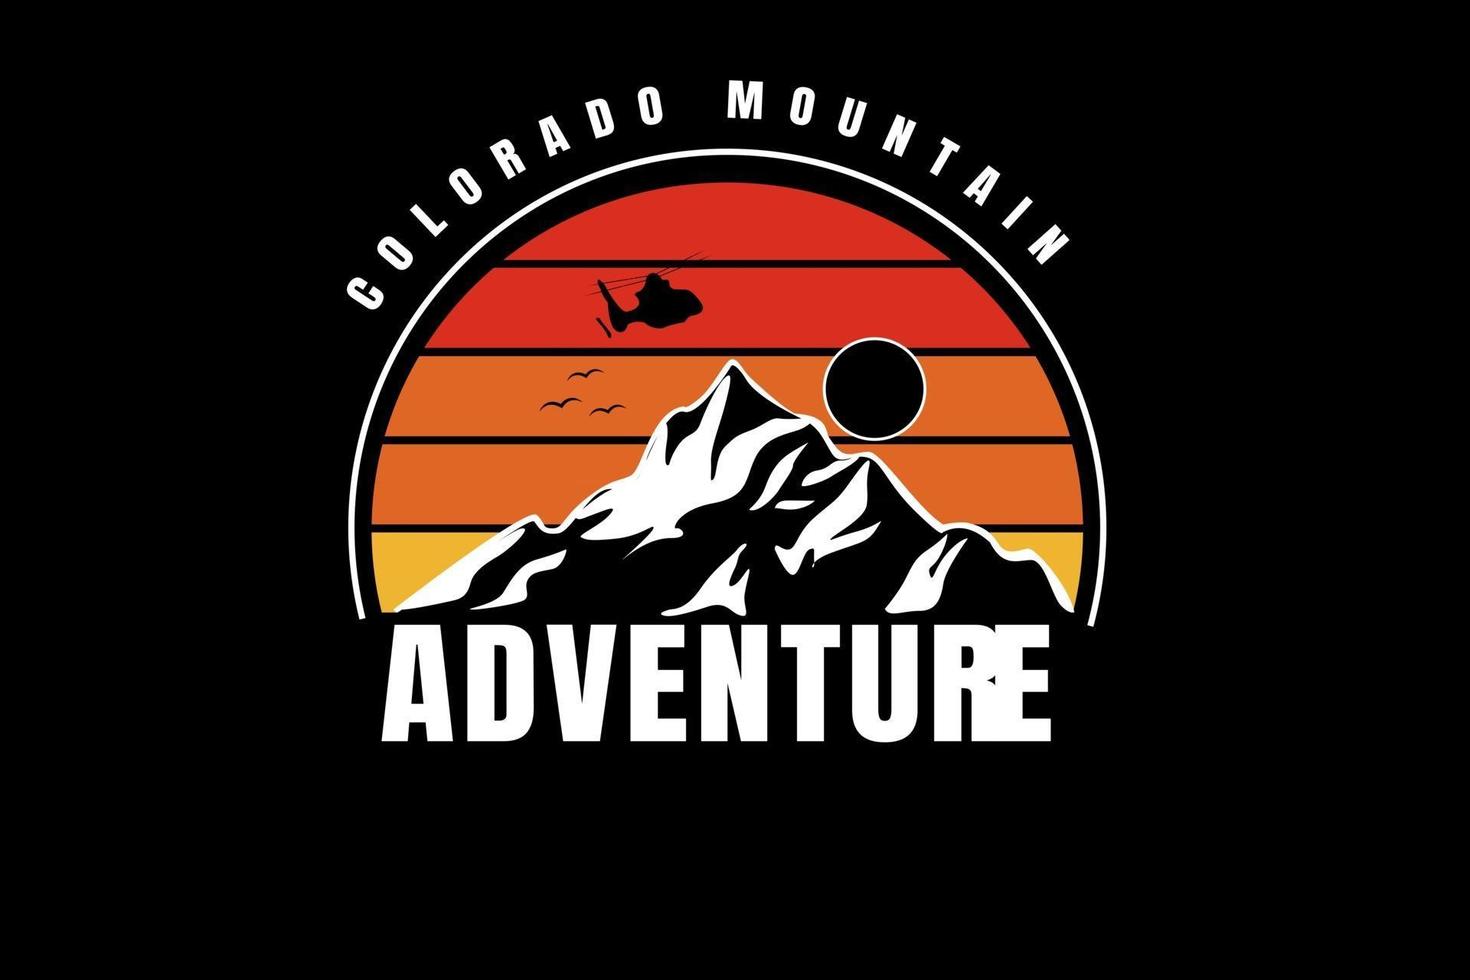 colorado mountain adventure couleur jaune et orange dégradé vecteur